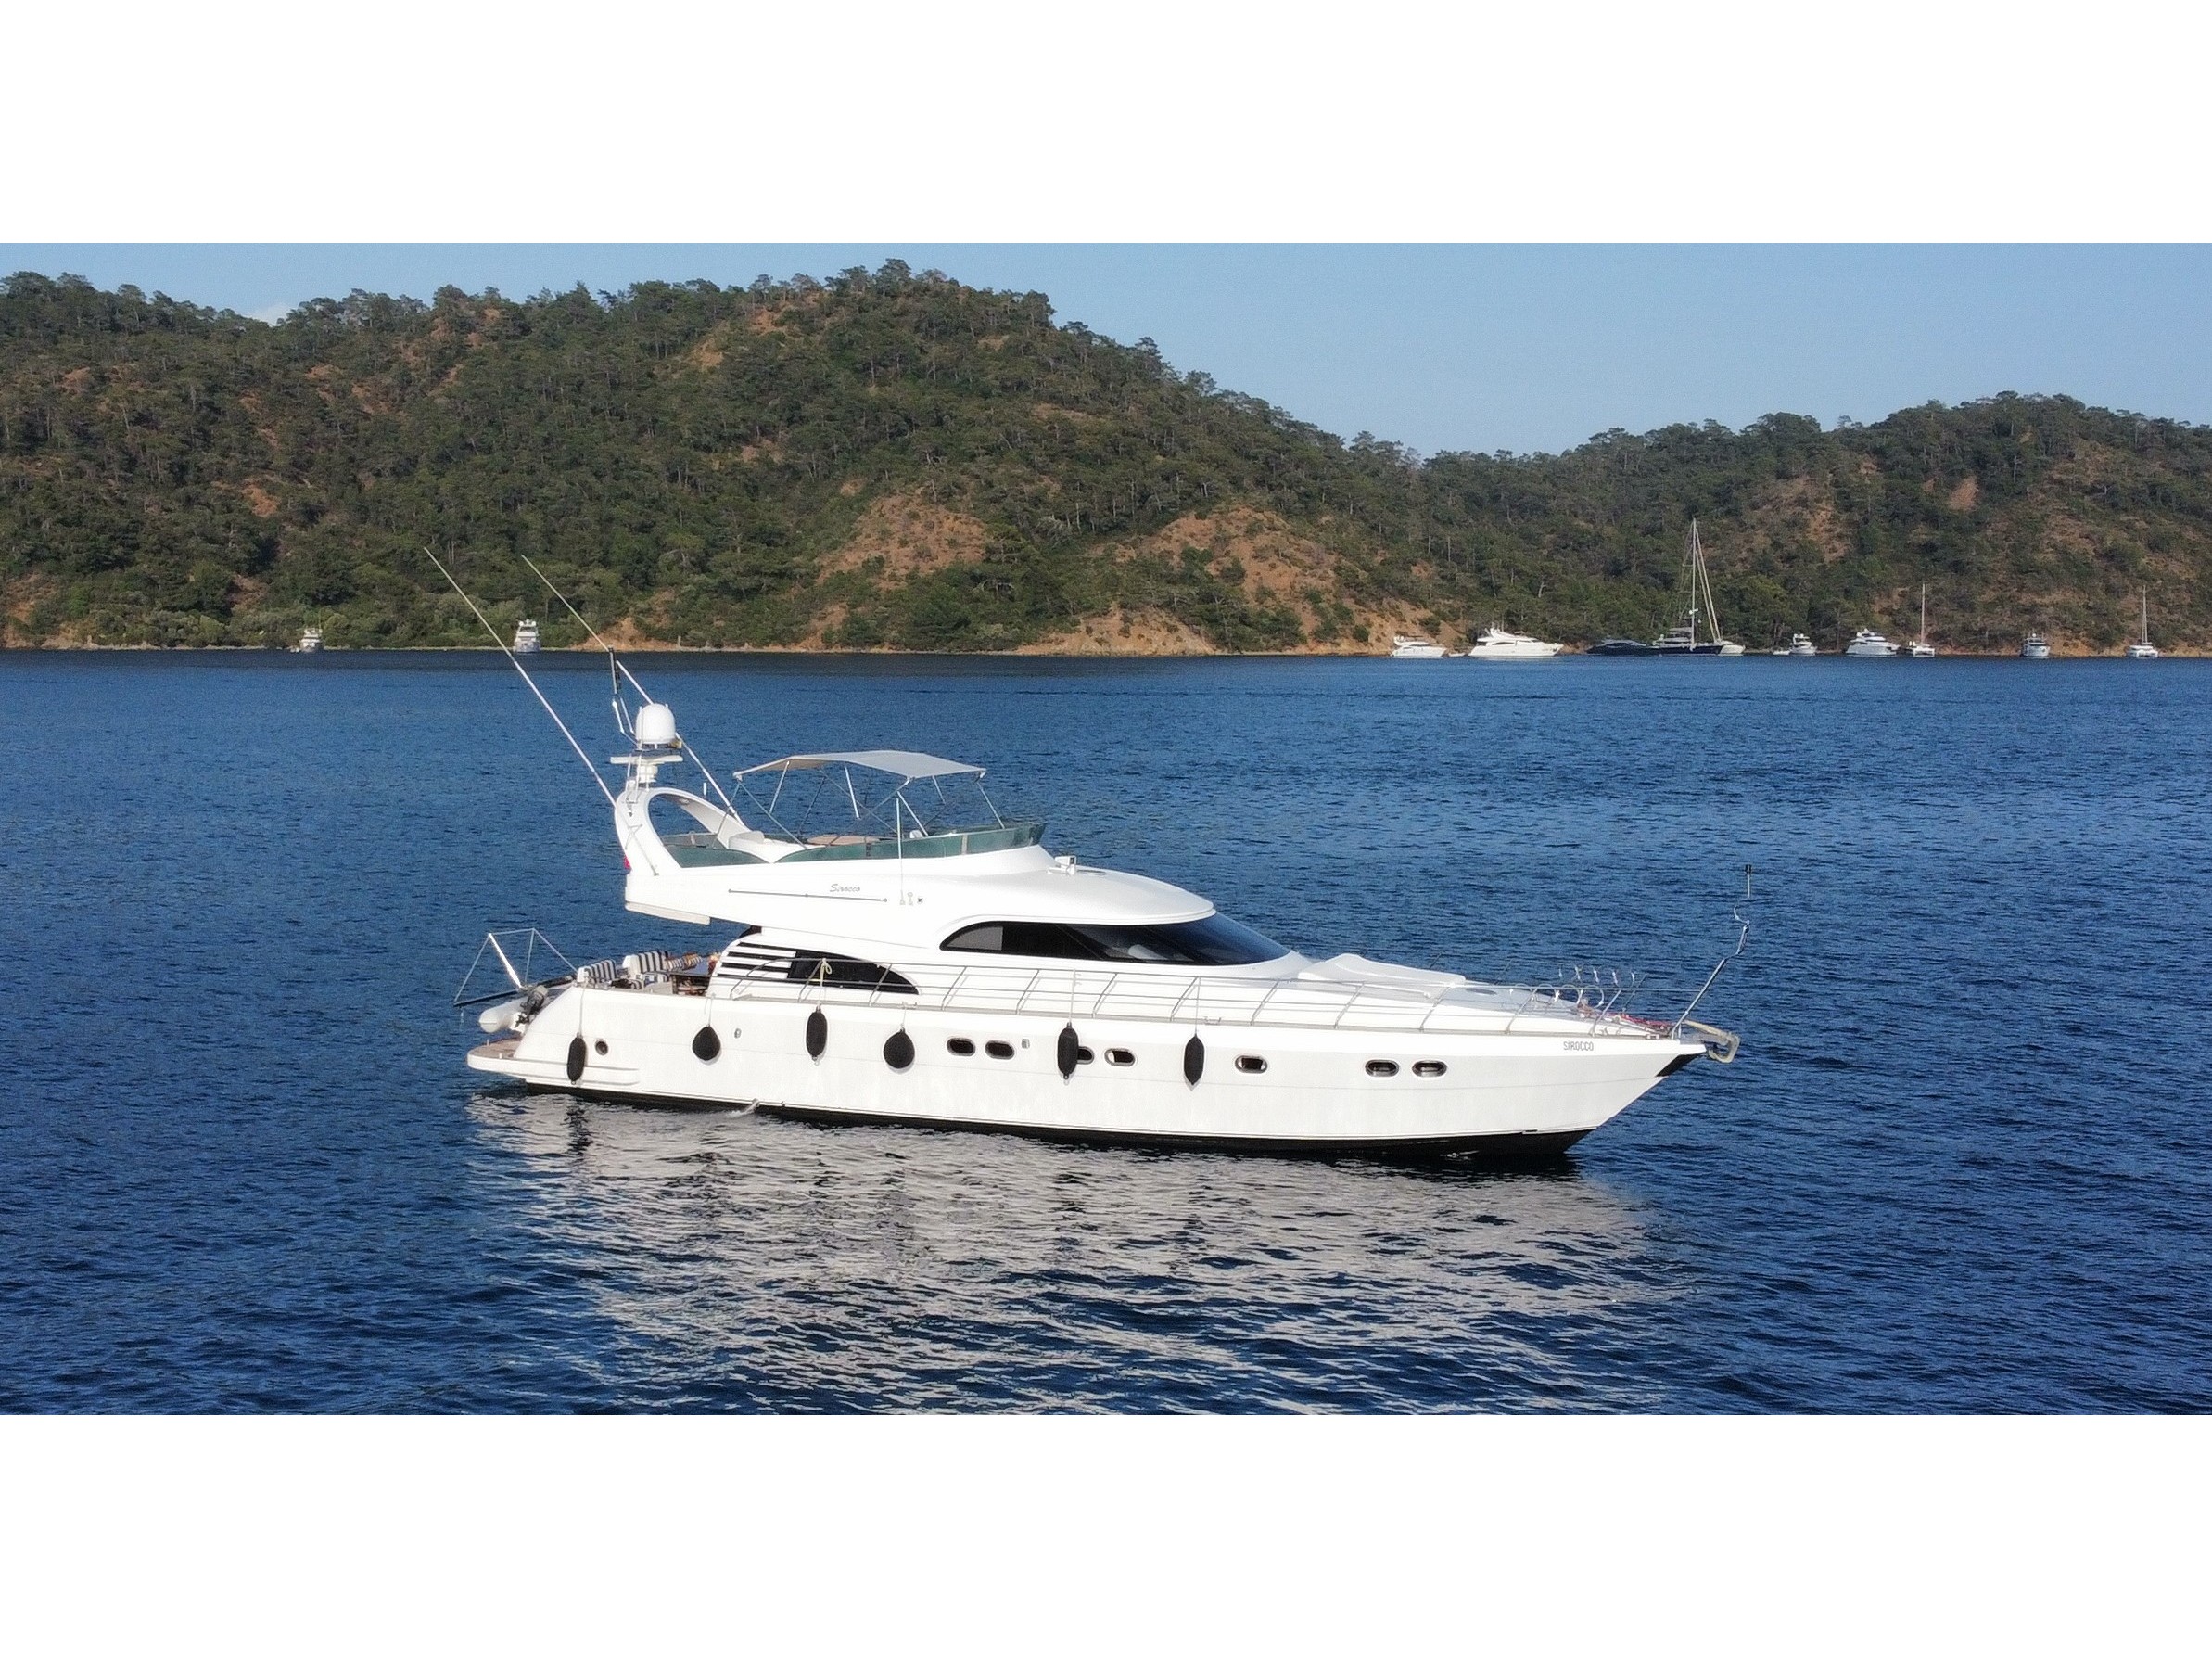 Motoryacht - Motor Boat Charter Turkey & Boat hire in Turkey Turkish Riviera Lycian coast Göcek Göcek Mucev Marina 2